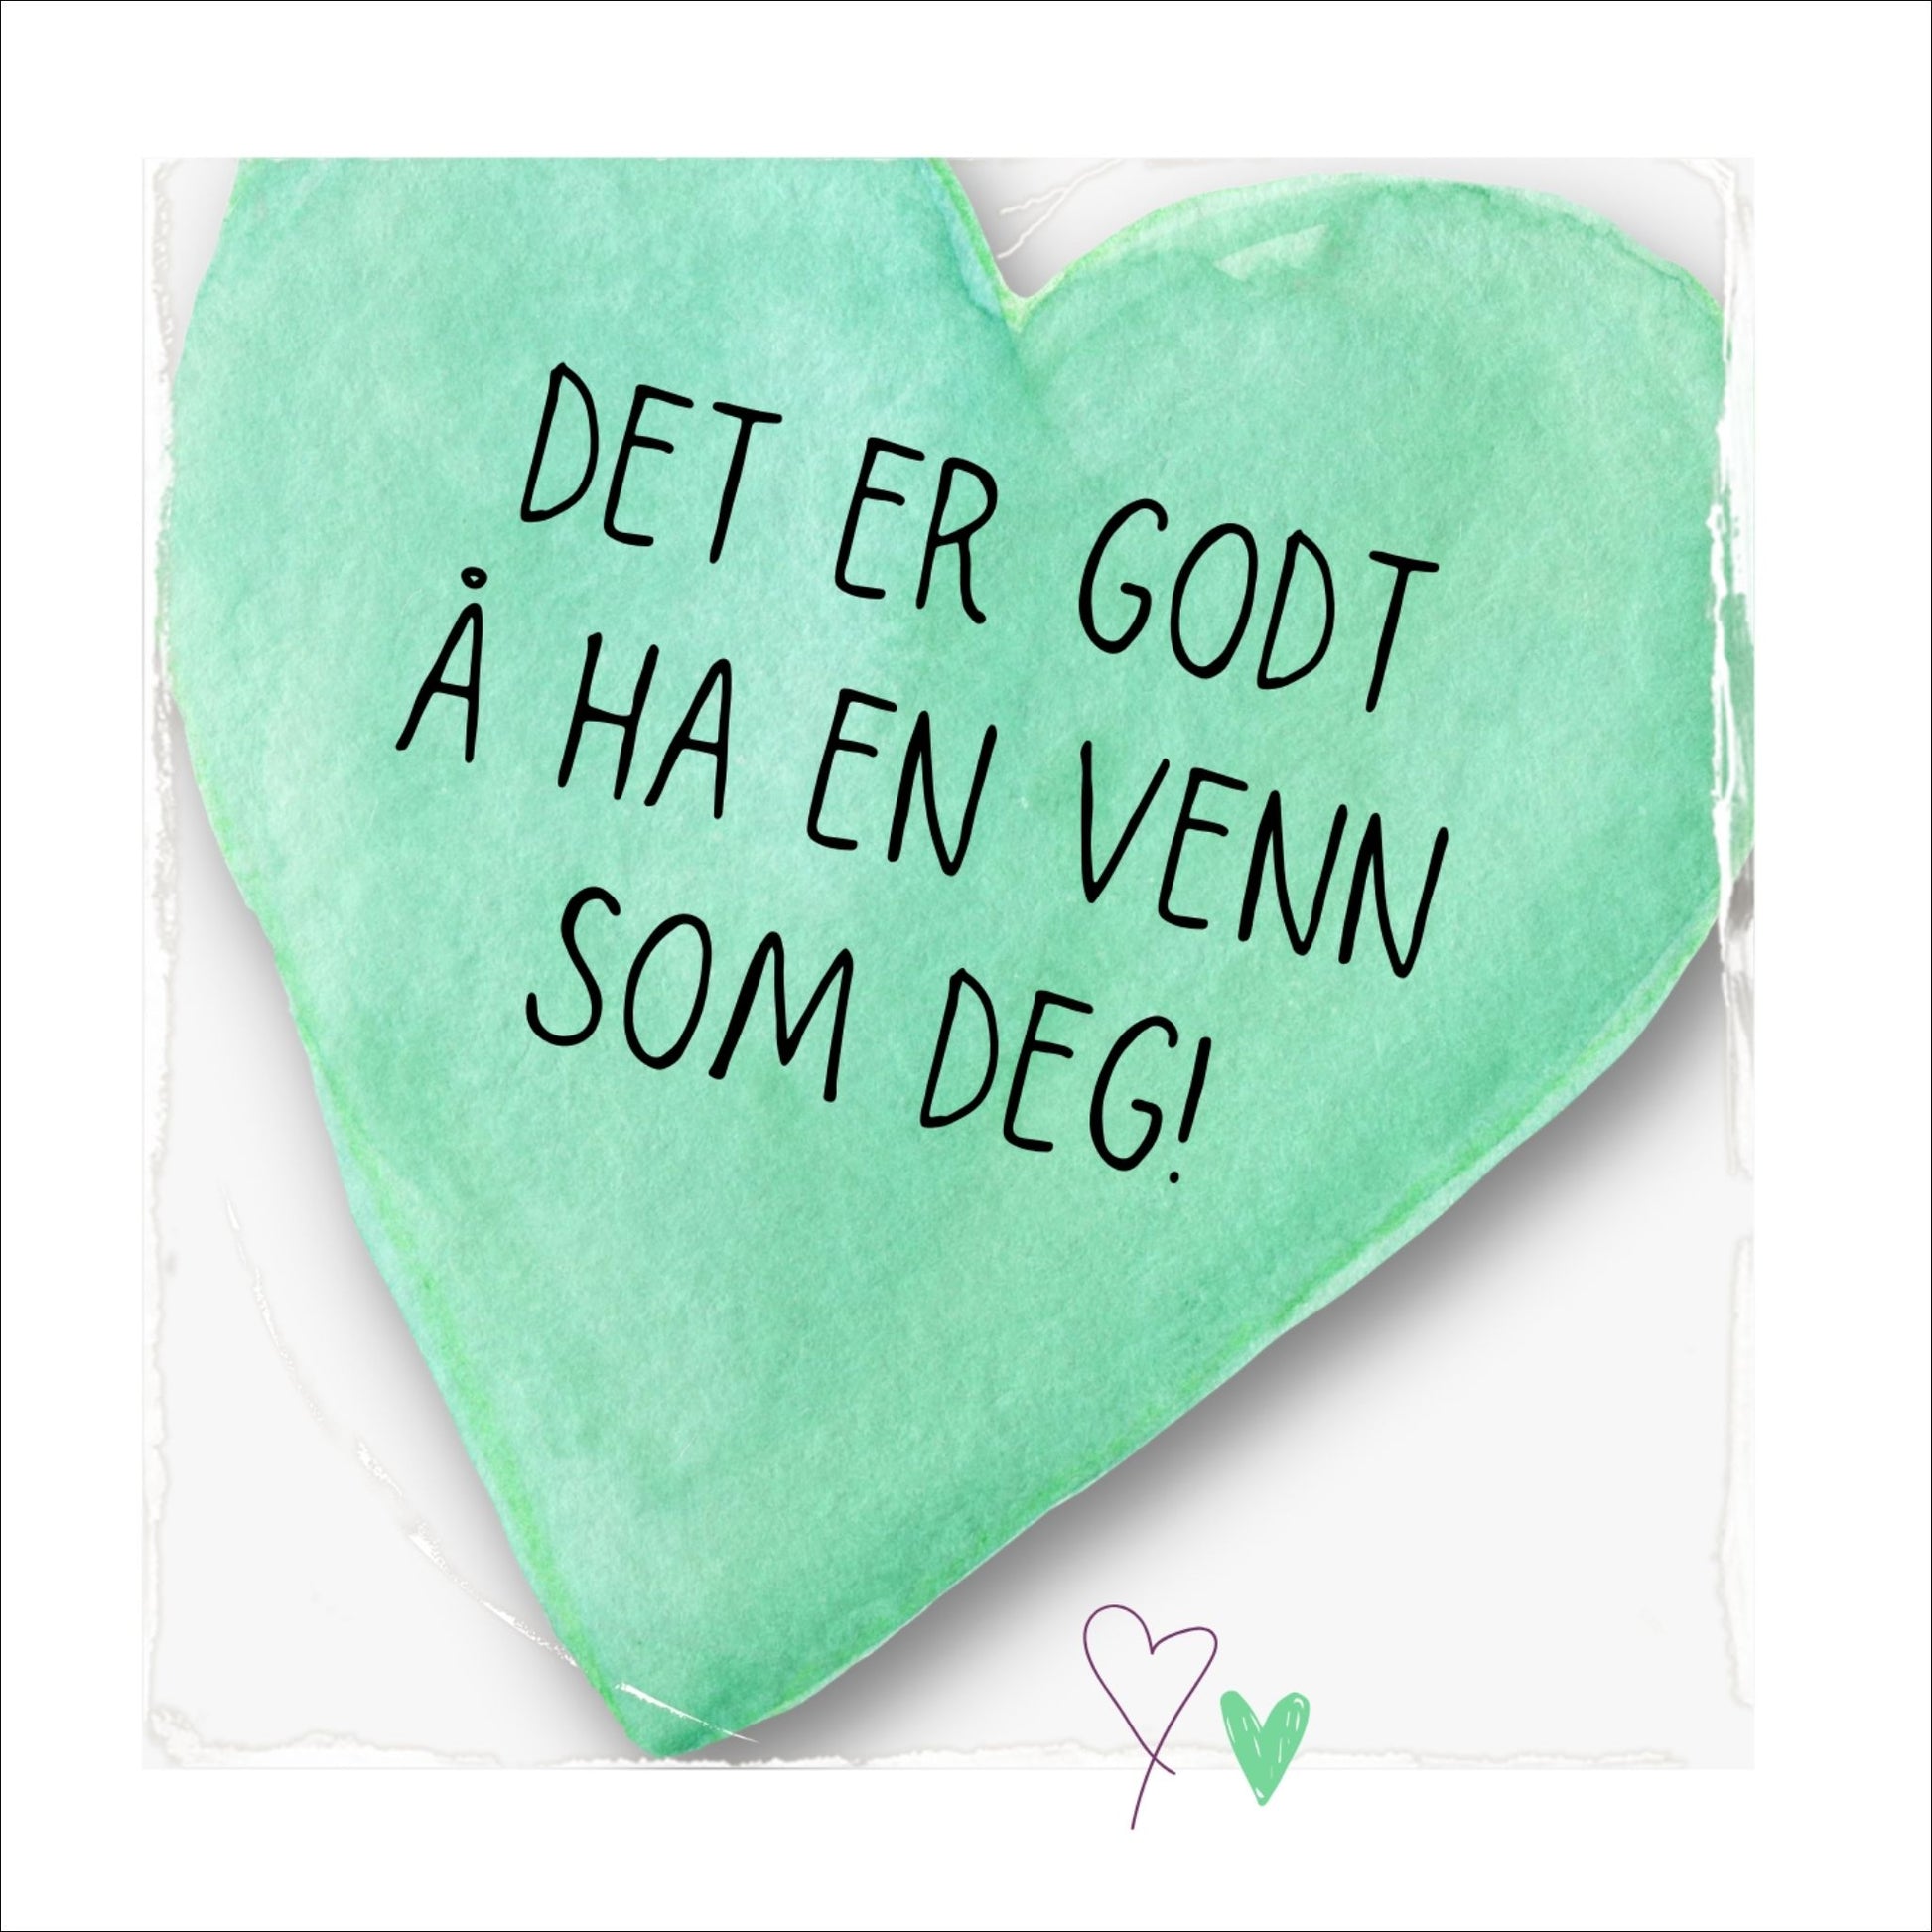 Plakat med lysegrønt hjerte og tekst "Det er godt å ha en venn som deg". Med hvit kant på 1,5 cm. 